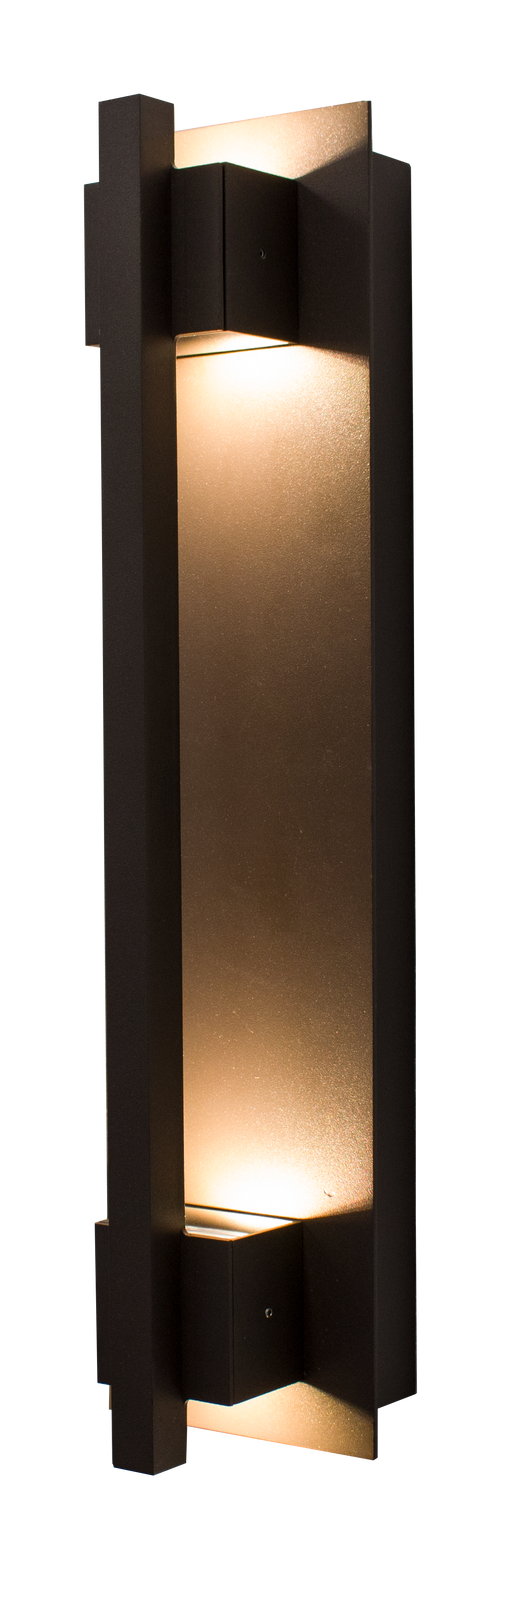 Westgate Manufacturing Crest By Westgate LED Wall Mount Sconces 1800Lm 3000K 120-277V Dark Bronze (CRE-HL20-03-30K-BR)